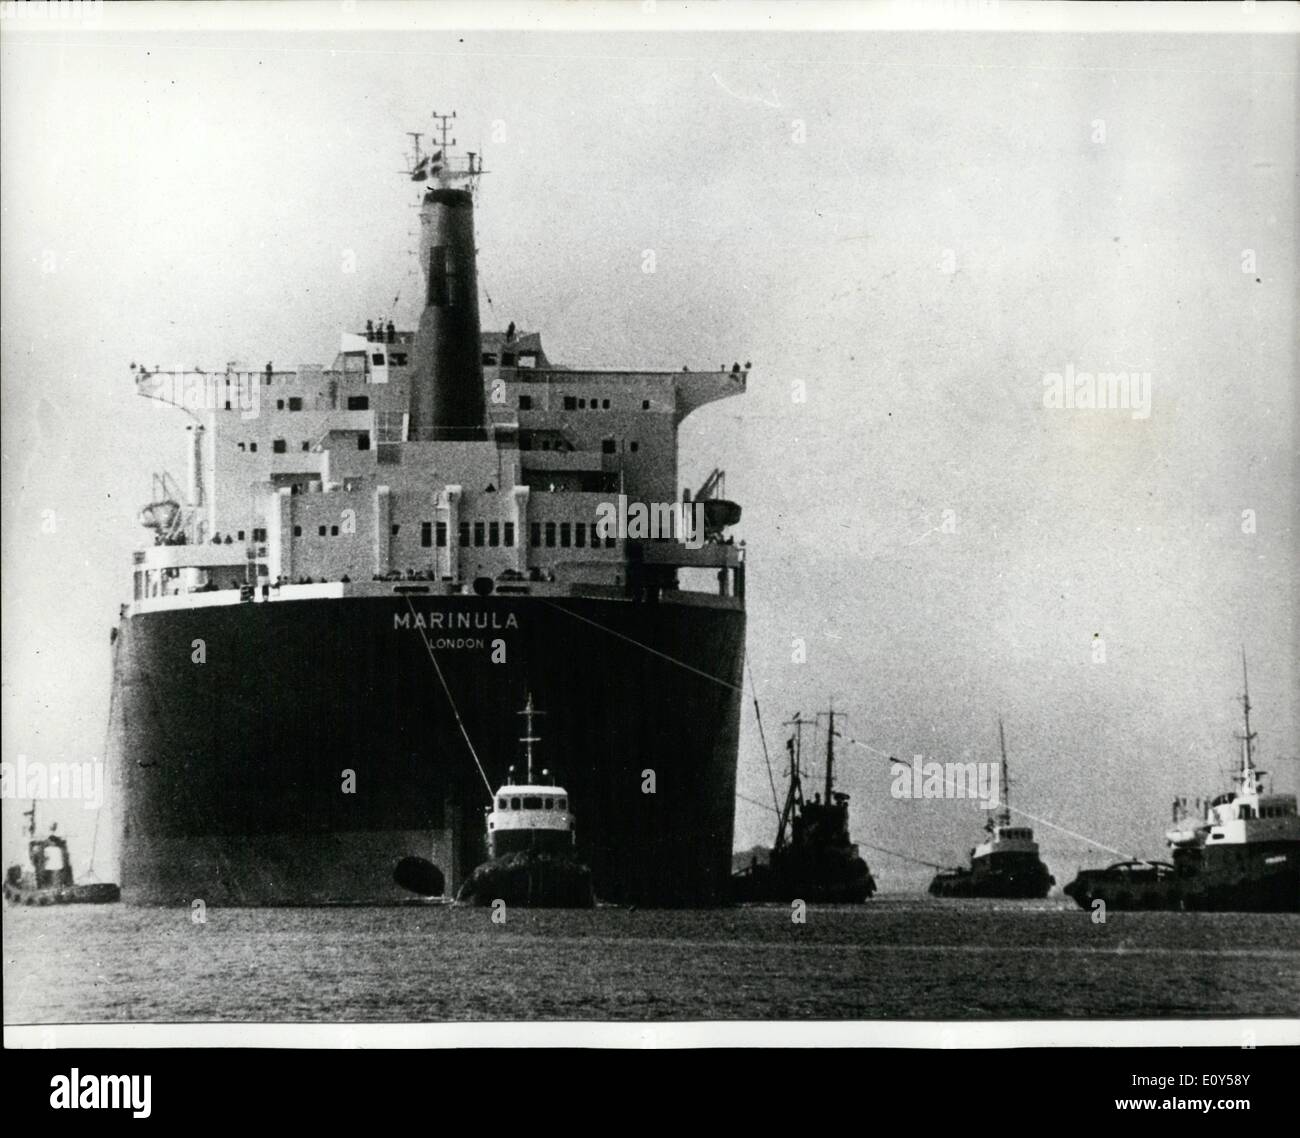 08 août, 1968 - plus grand navire jamais construit en Scandinavie pour être livré à shell. : Le Lindoa Shipbuilding Company à l'île de Fionie, au Danemark, tiendra aujourd'hui (vendredi) offrent le plus grand navire jamais construit en Scandinavie, à Shell. Elle constitue la "arinula» 196 000 tonnes d'un superpétrolier, vu ici au cours d'un essai de la voile. Banque D'Images